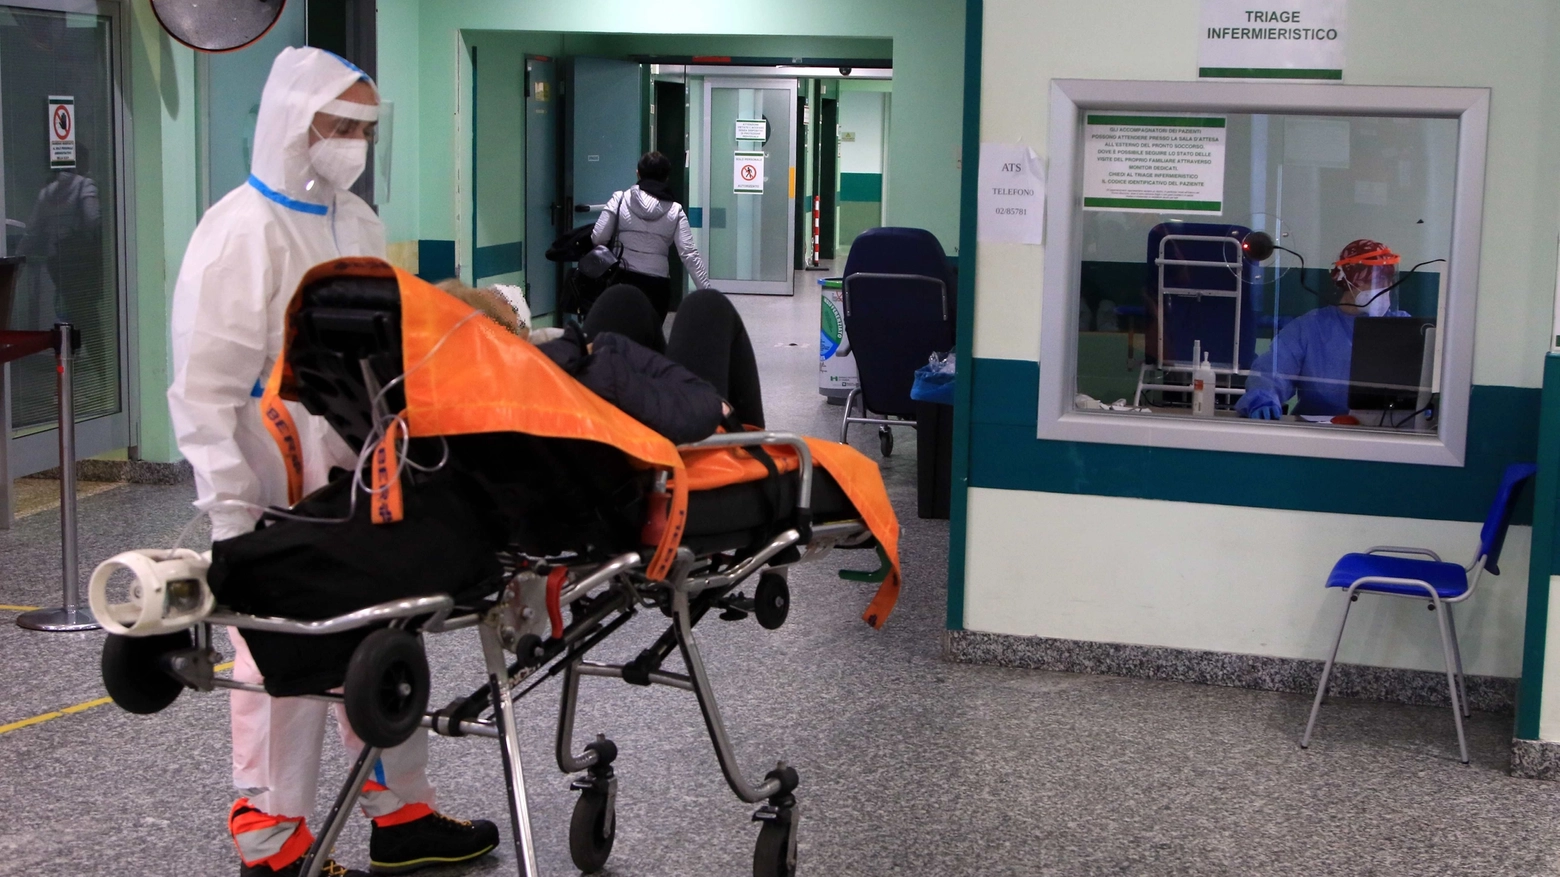 Emergenza Covid-19 in Lombardia: ospedali sempre più sotto pressione